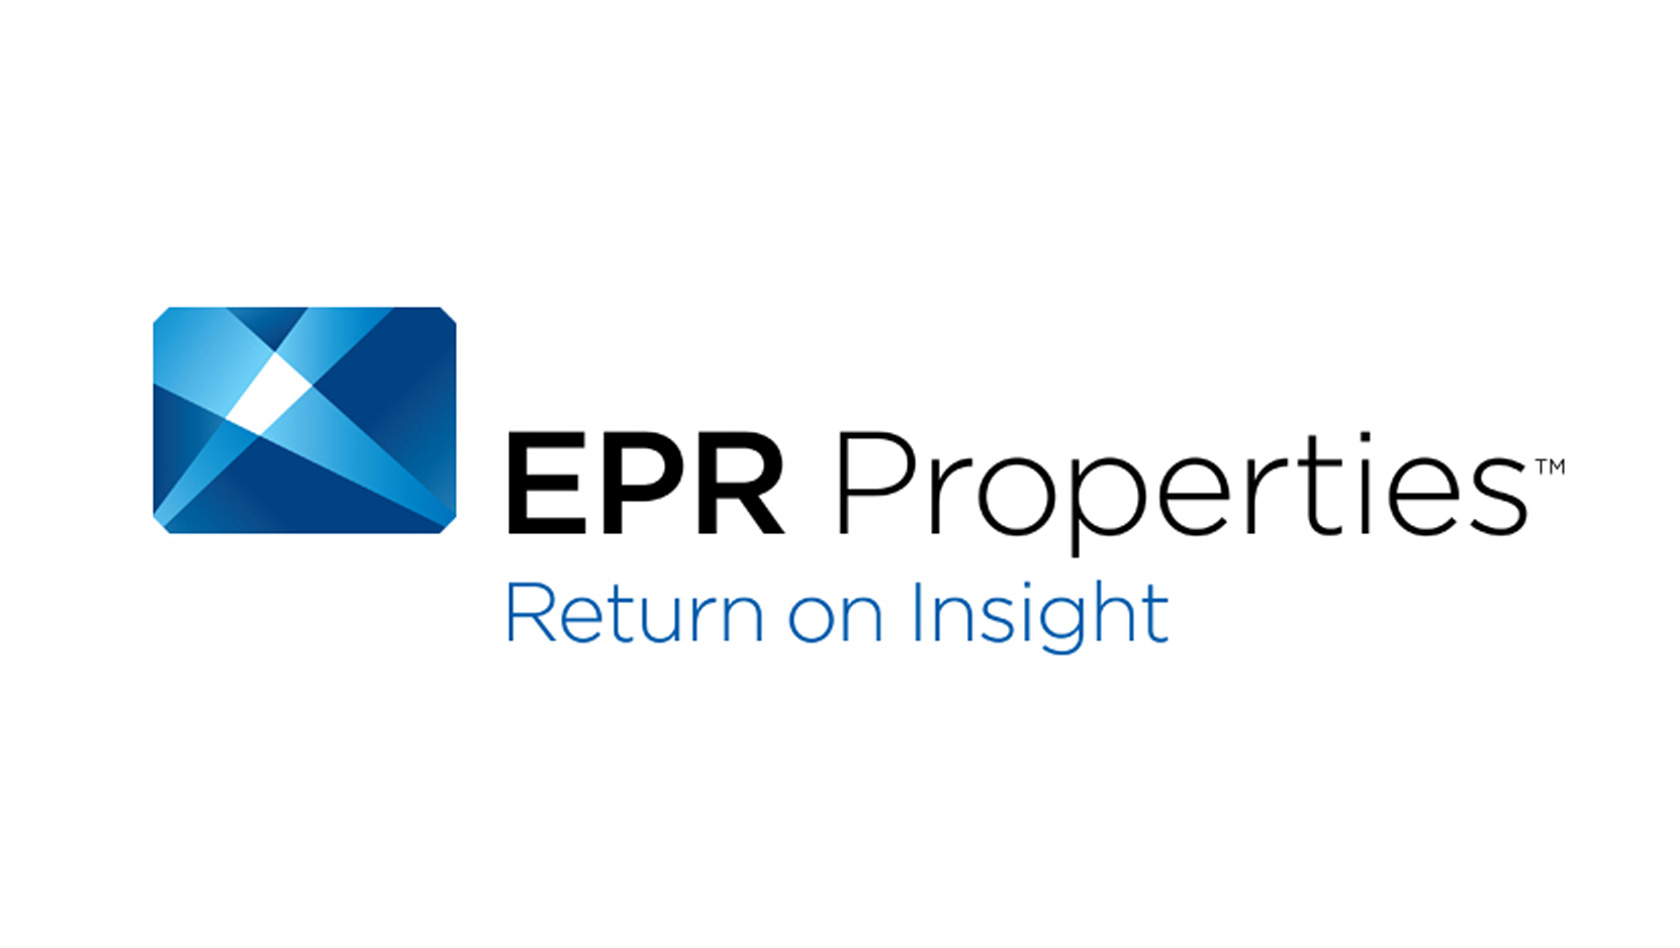 EPR Properties Logo